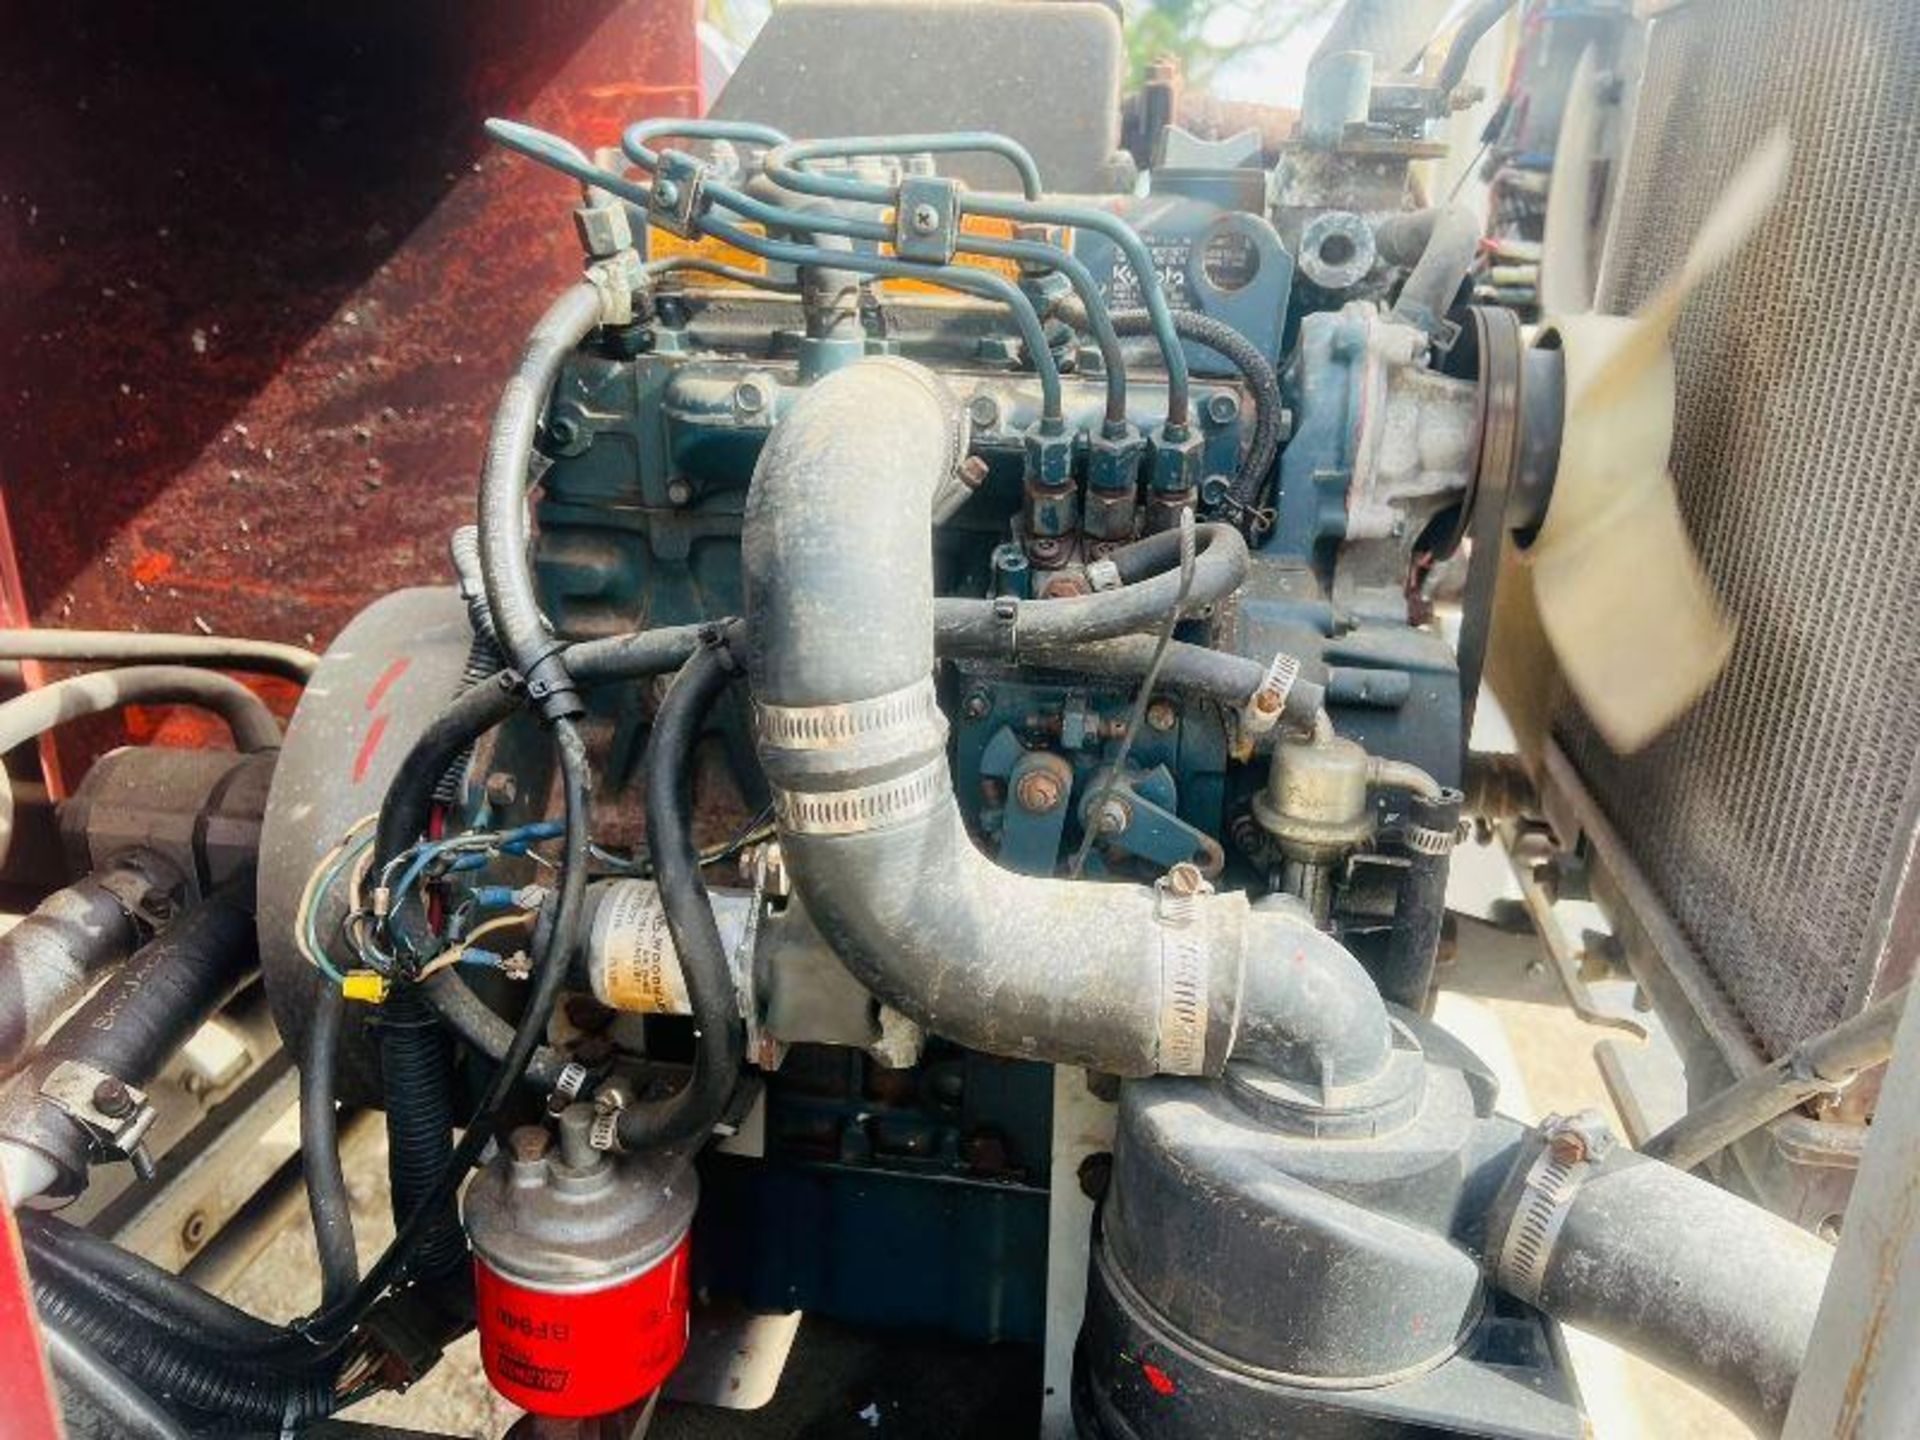 SKYJACK 4WD SCISSOR LIFT C/W KUBOTA ENGINE - Image 8 of 16